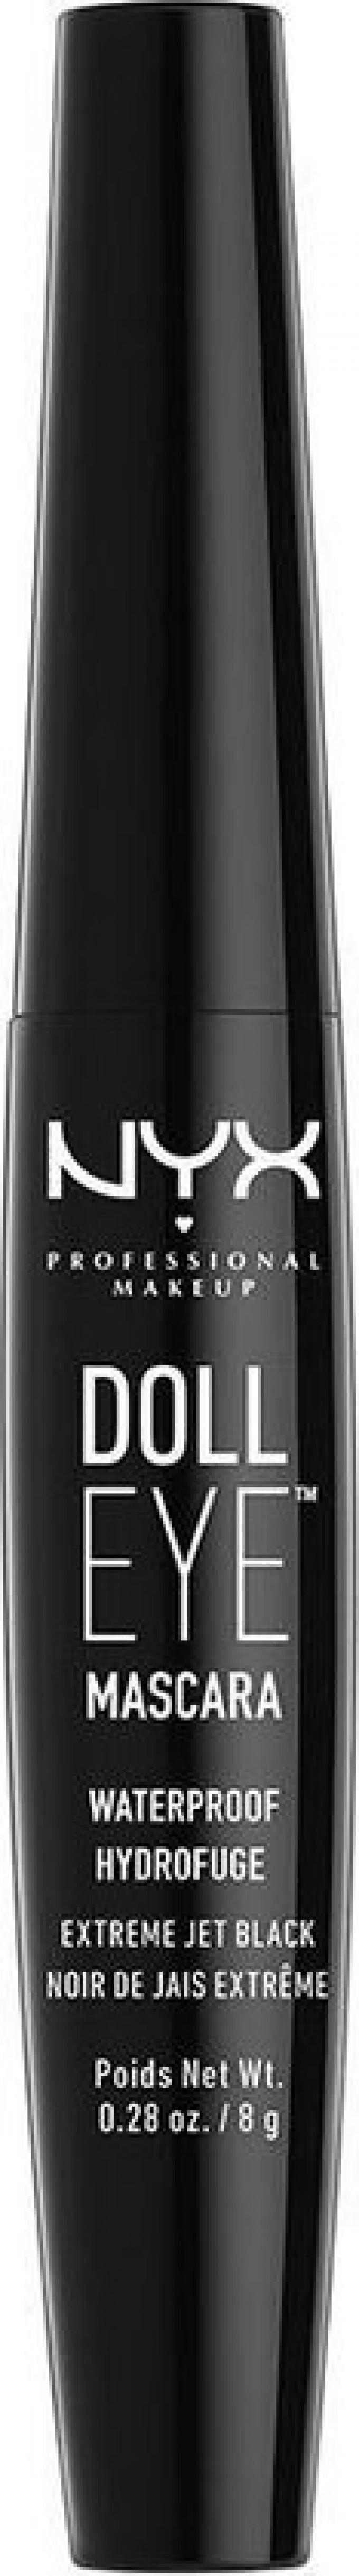  Doll Eye Mascara de NYX